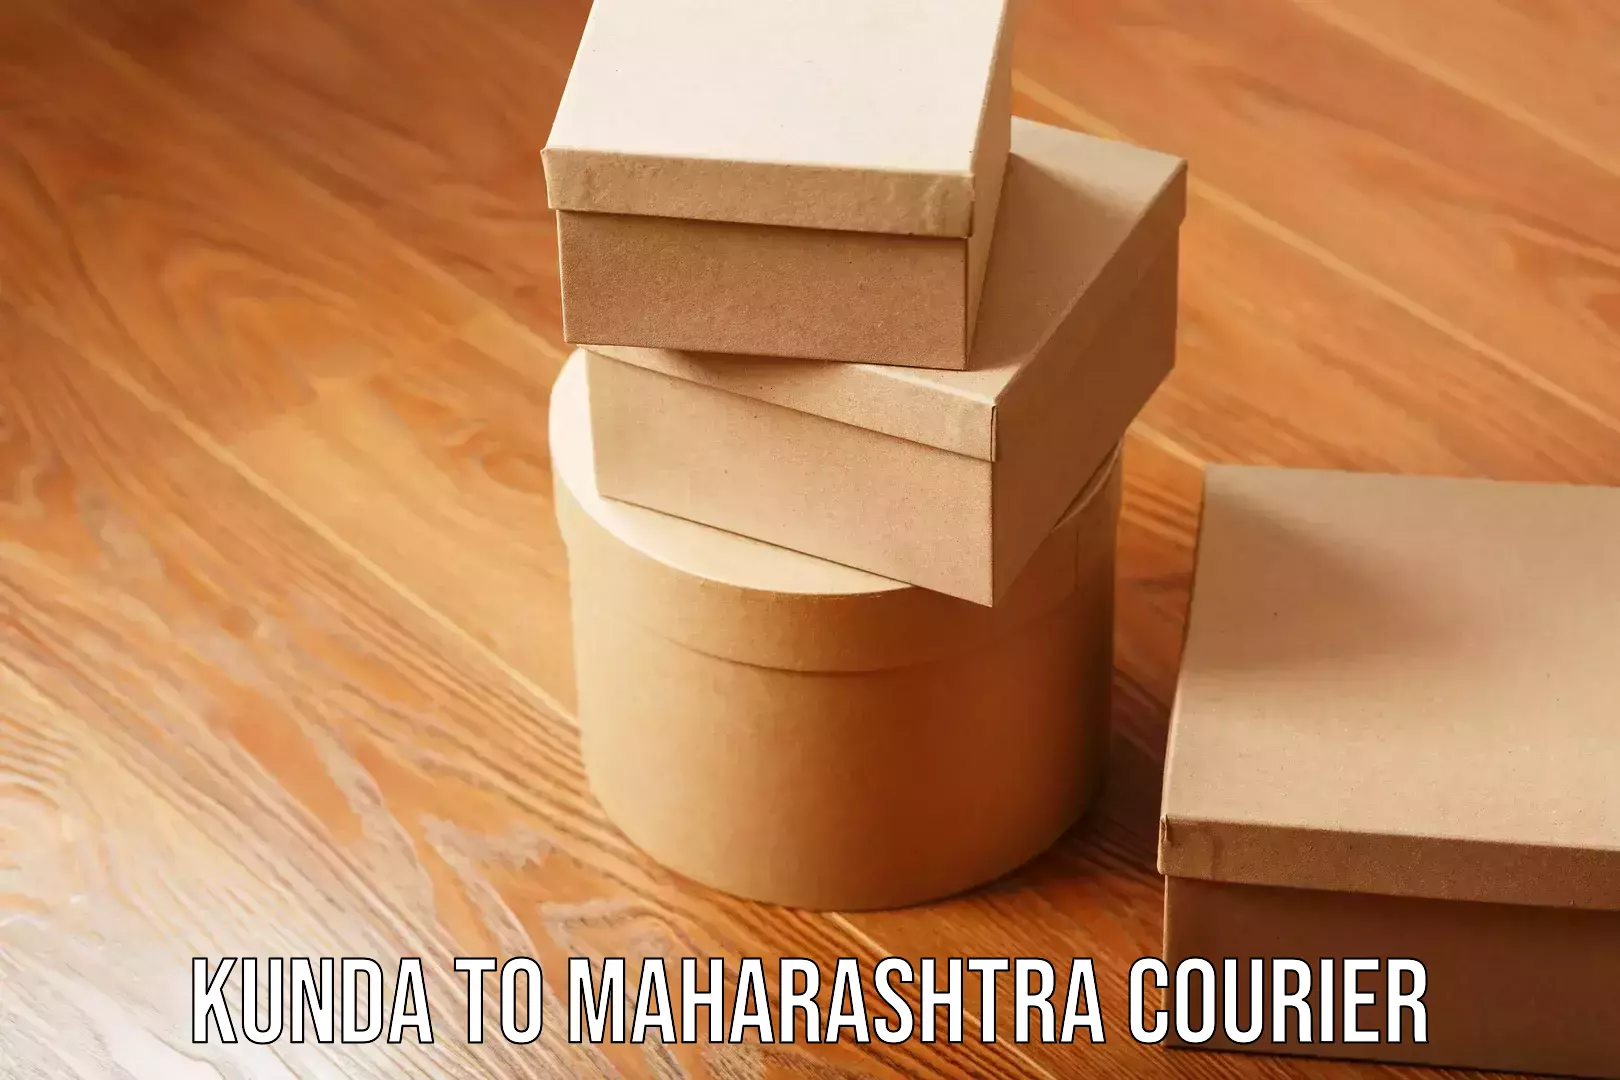 Budget-friendly movers Kunda to Maharashtra